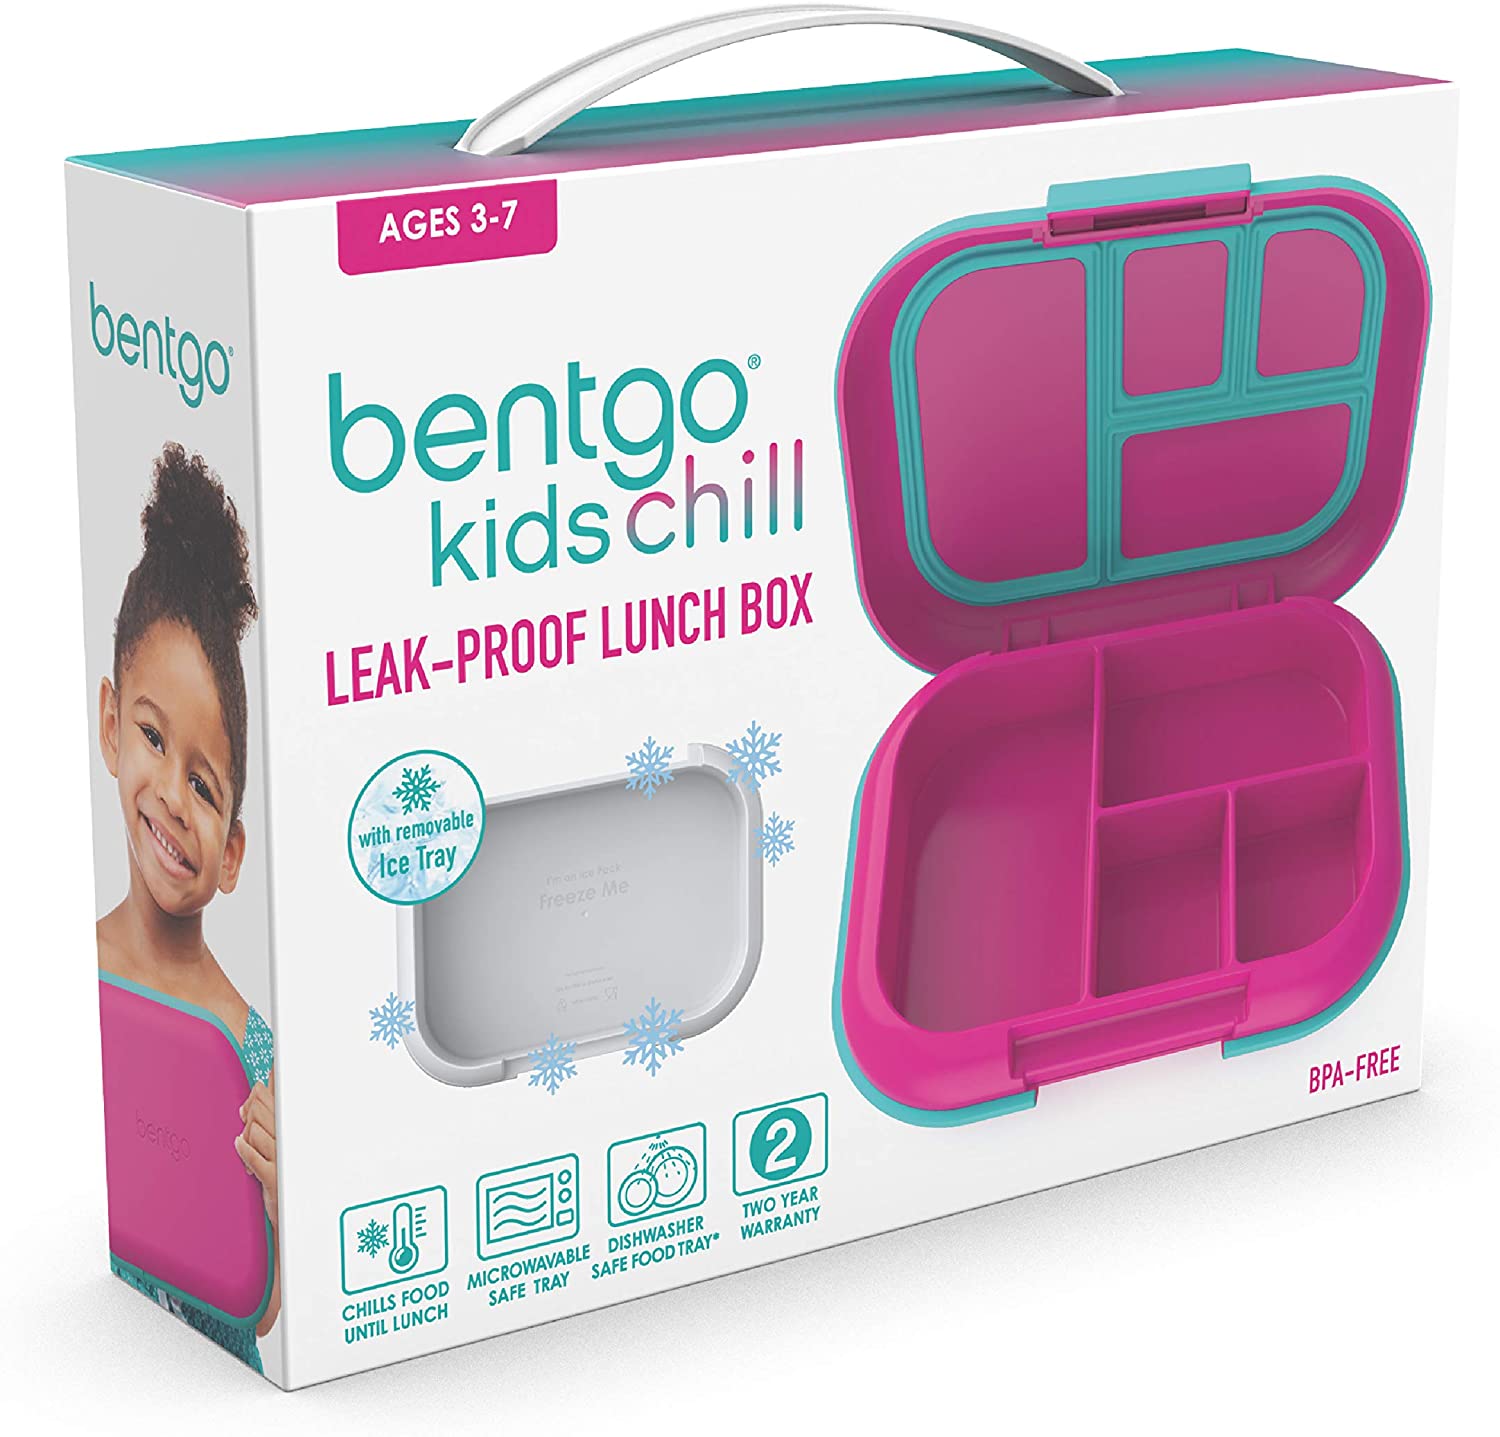 Lonchera Bentgo Kids Chill ; solución para el almuerzo con 4 compartimentos  y paquete de hielo extraíble para comidas y aperitivos para llevar, a